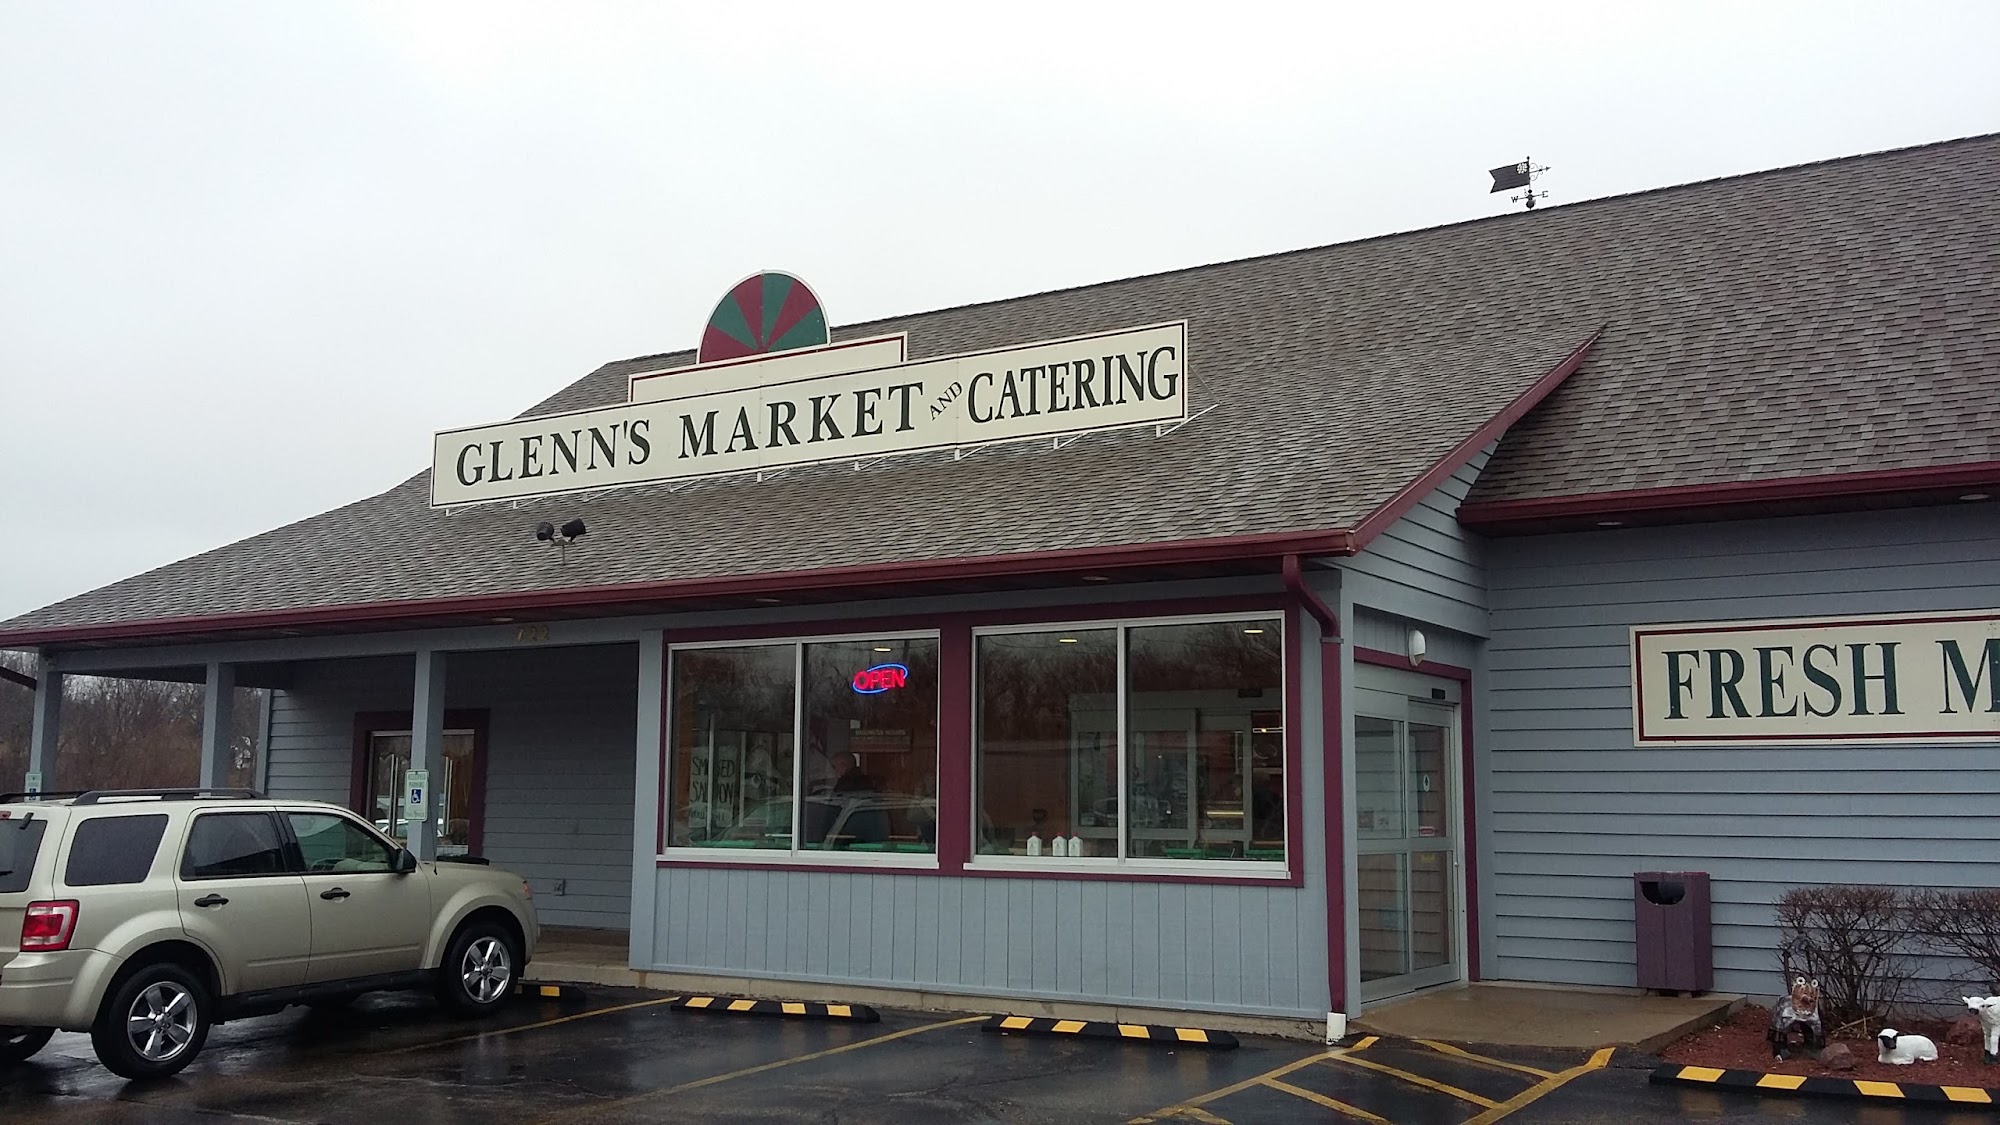 Glenn's Market & Catering